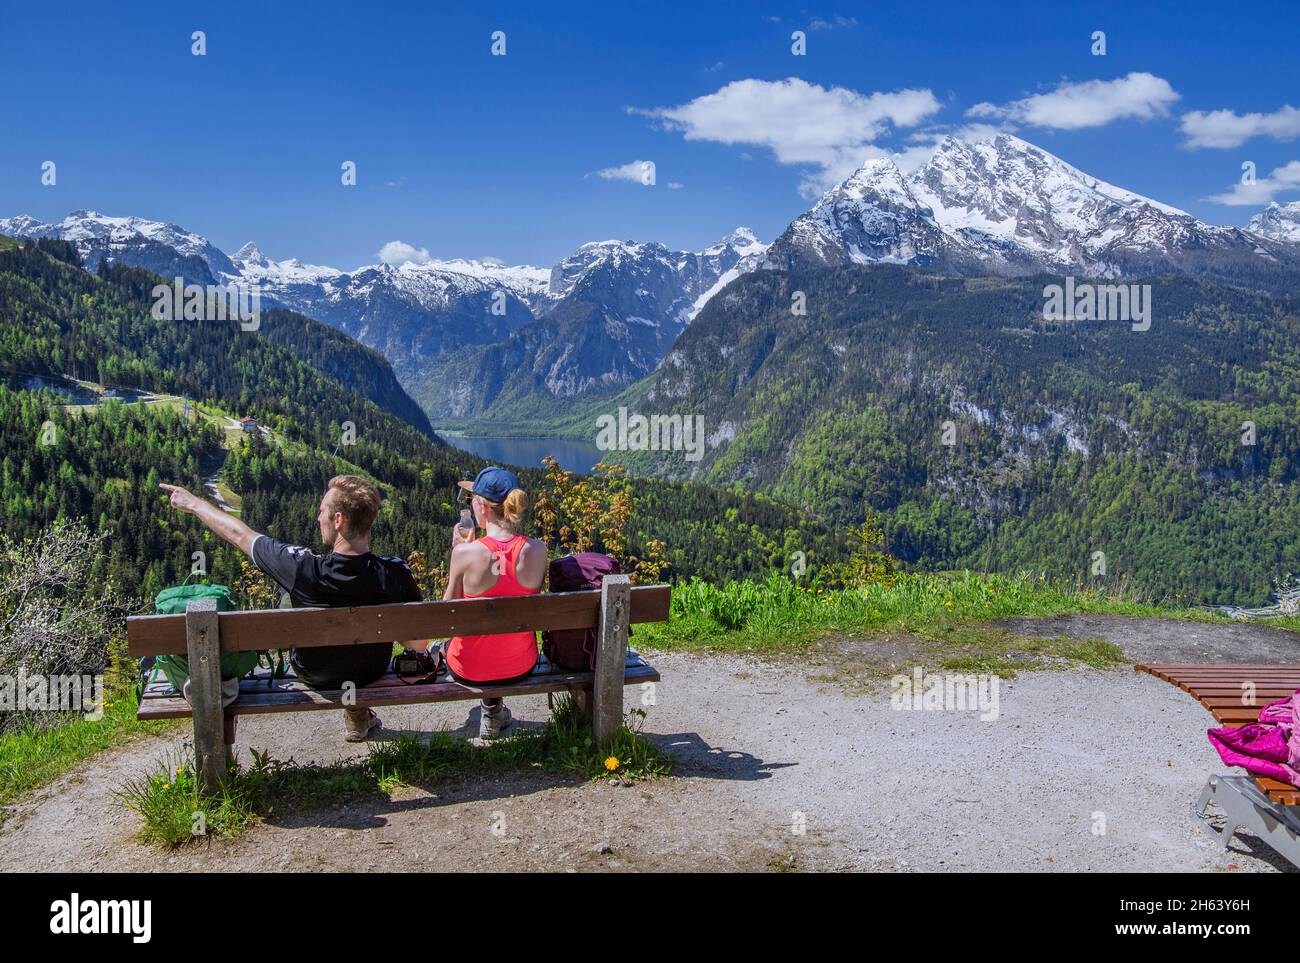 banc d'observation avec des vacanciers sur le brandkopf avec vue sur koenigssee,steinernes meer et watzmann 2713m,schönau am koenigssee,alpes berchtesgaden,berchtesgadener land,haute-bavière,bavière,allemagne Banque D'Images